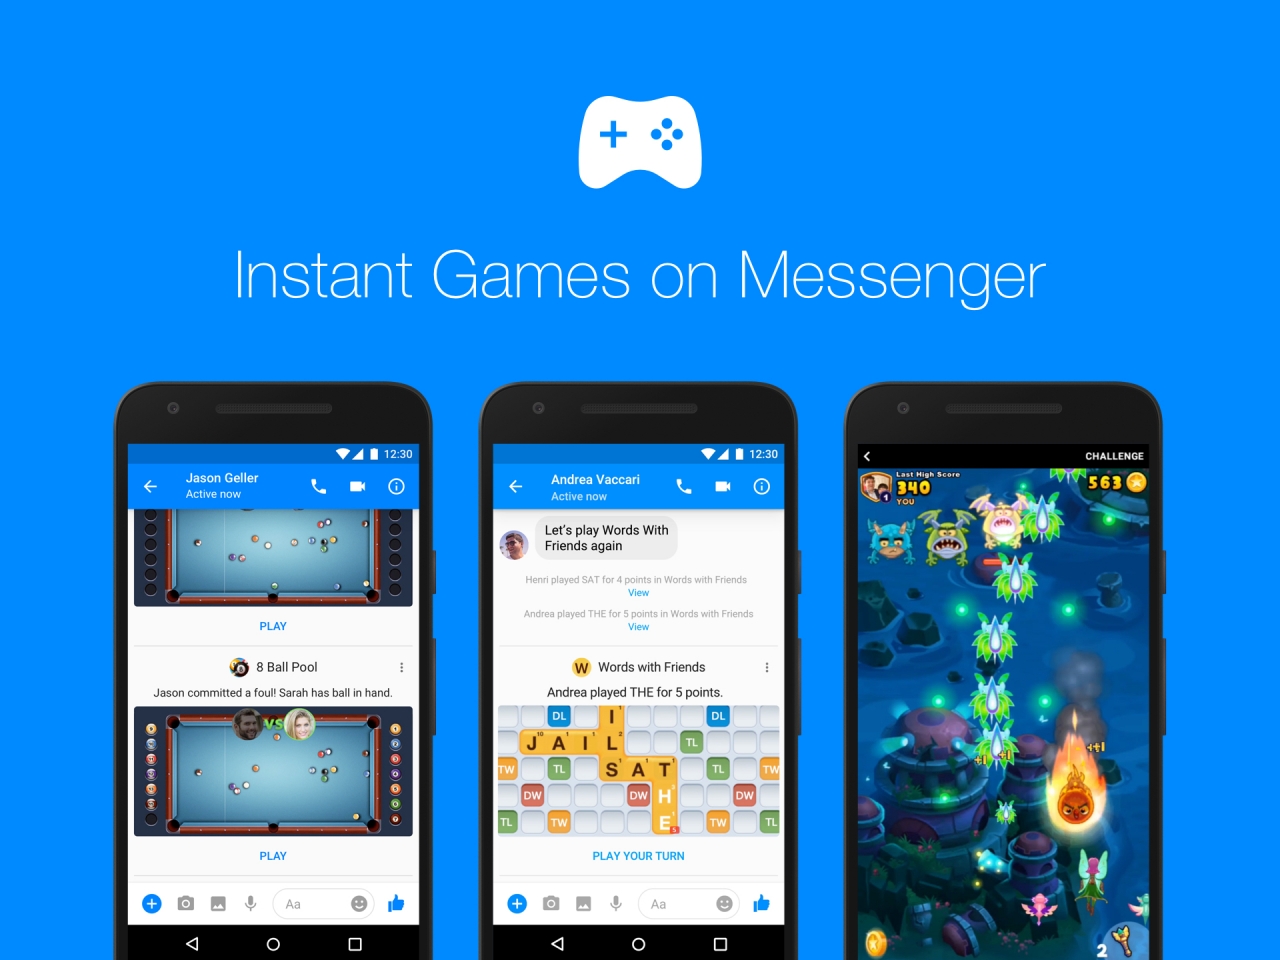 Facebook pridáva do aplikácie Messenger nové hry. Dostupné budú po